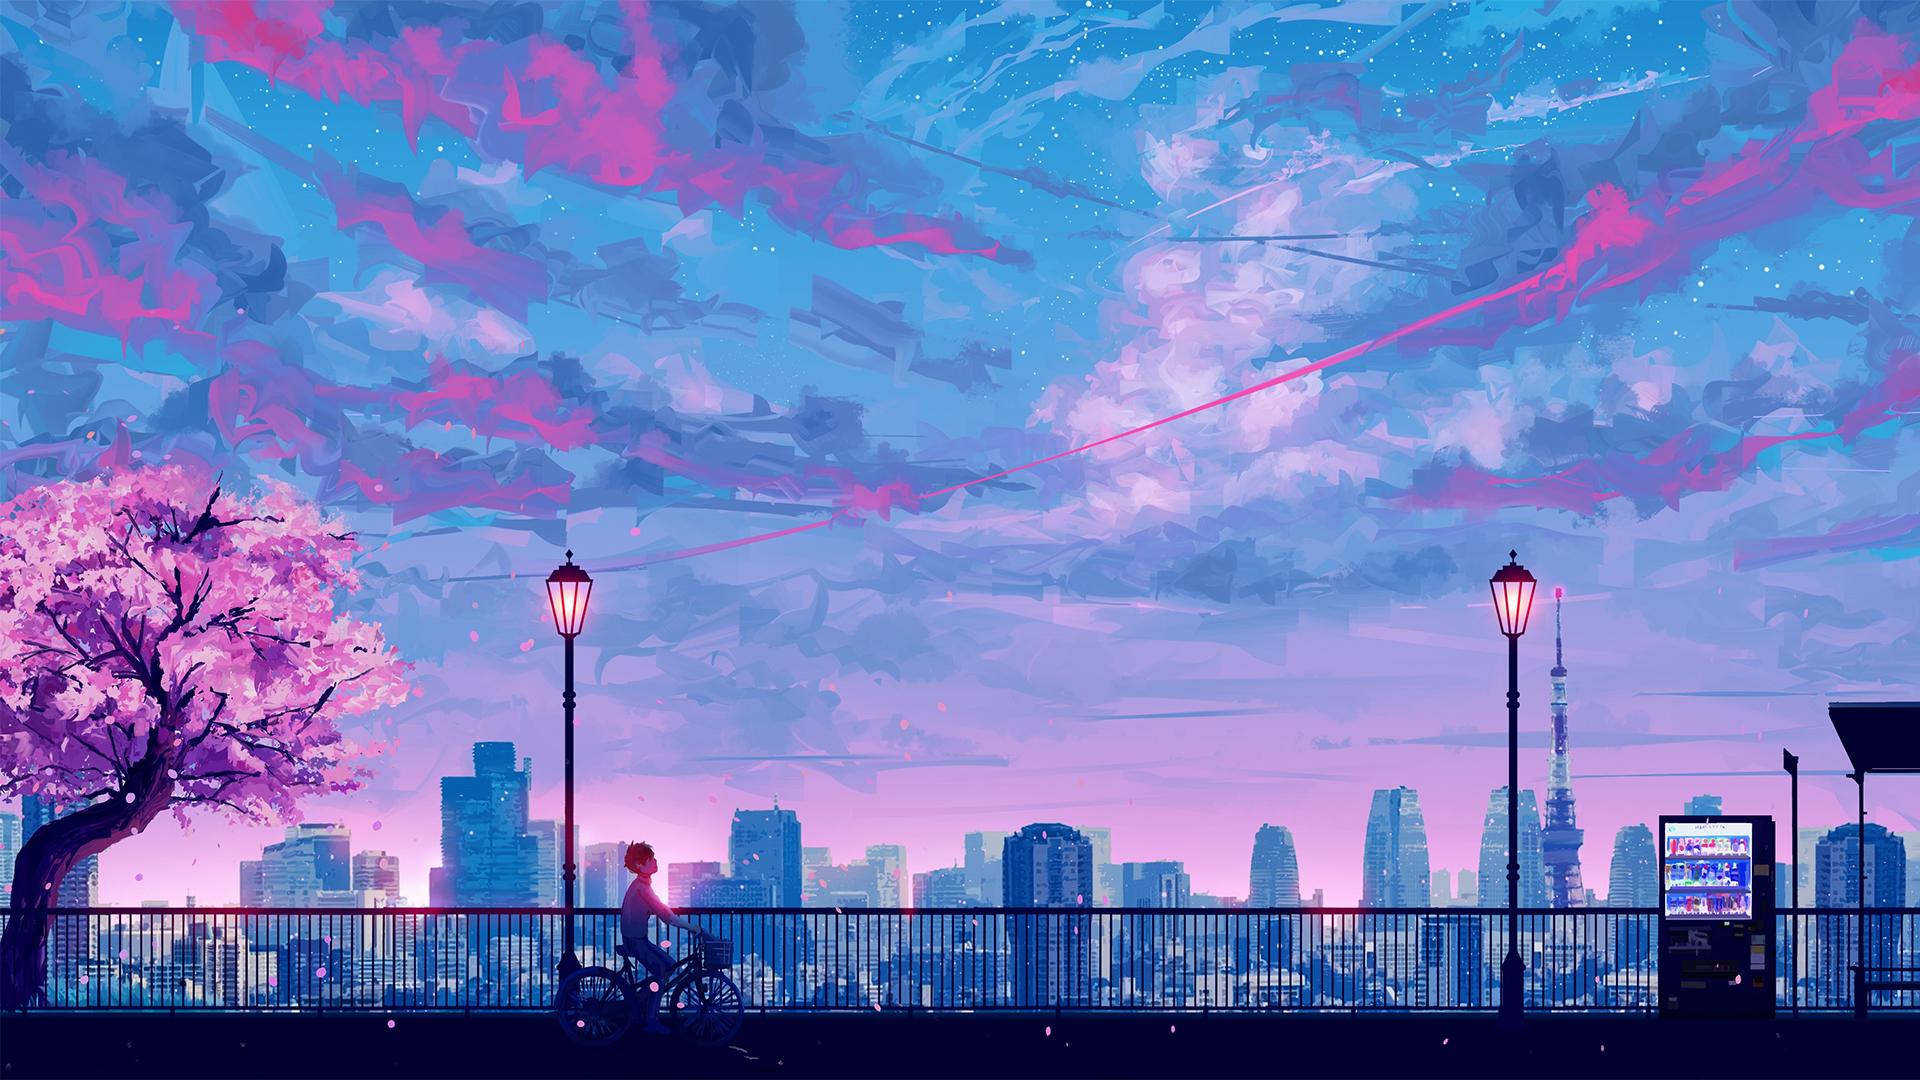 Bầu trời anime màu tím: Hình ảnh bầu trời trong anime màu tím là một điều tuyệt vời, đem lại cảm giác yên bình và đầy phấn khởi cho người xem. Khi chiếc mặt trăng màu tím soi sáng lên bầu trời, bạn sẽ cảm thấy như đang du hành đến một thế giới khác, nơi một bầu trời màu tím là chuyện tất nhiên.